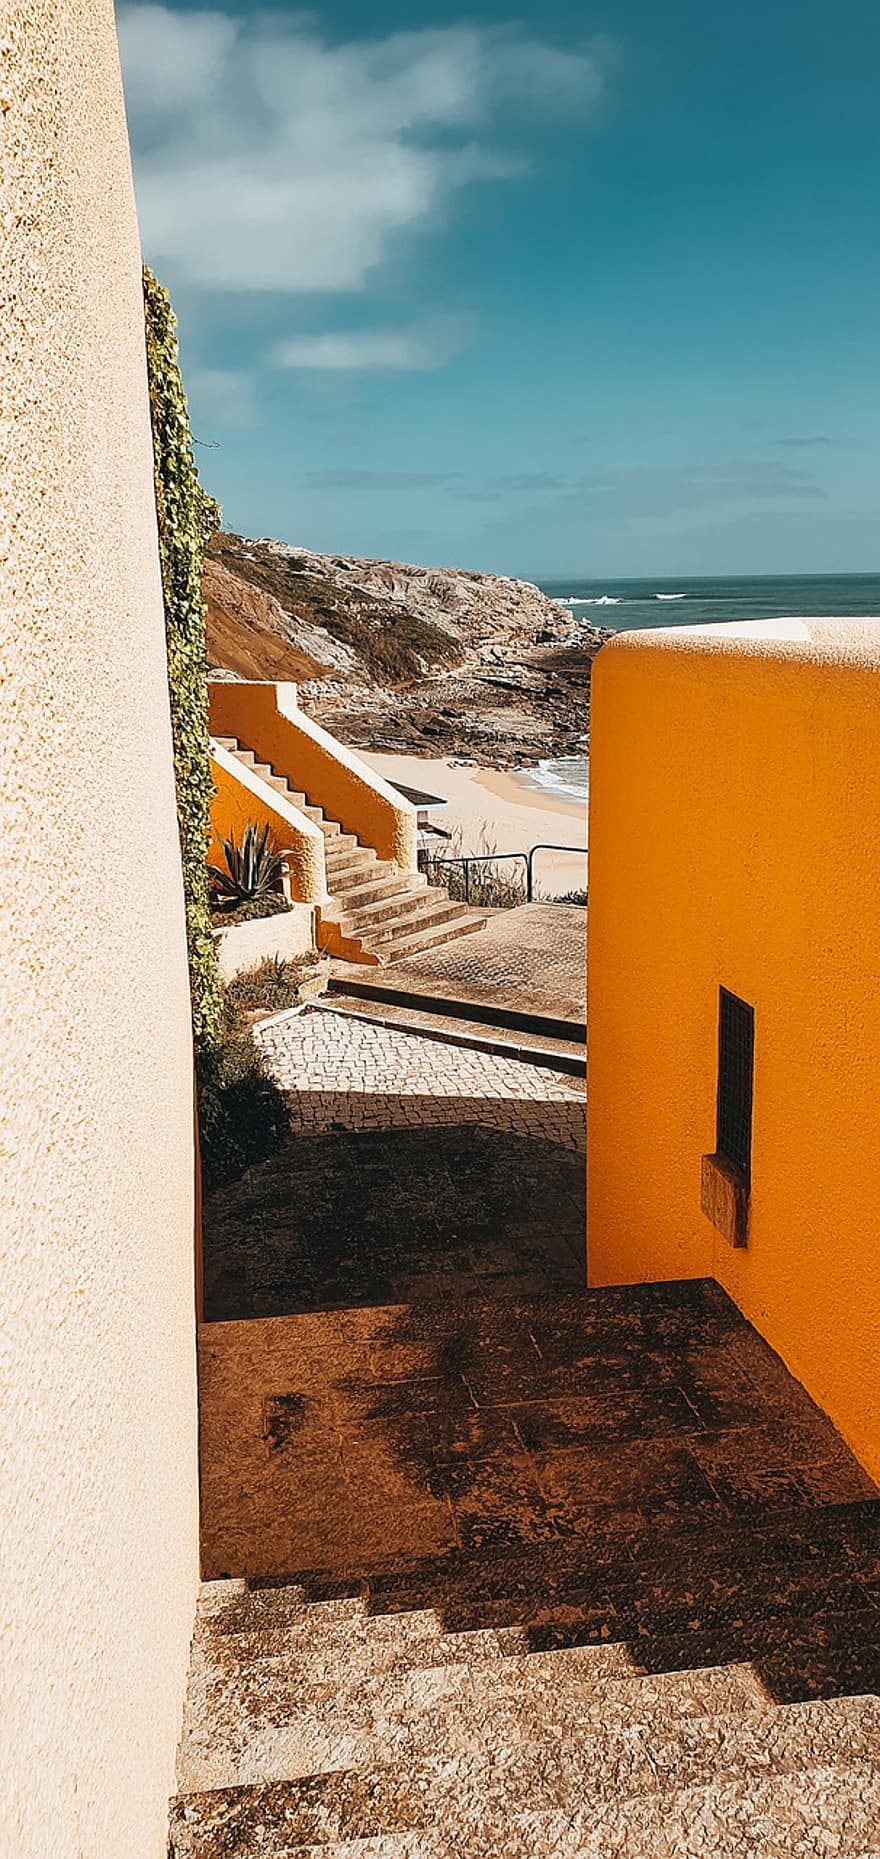 лестница, здания, пляж, песок, океан, путешествовать, туризм, природа, Португалия, архитектура